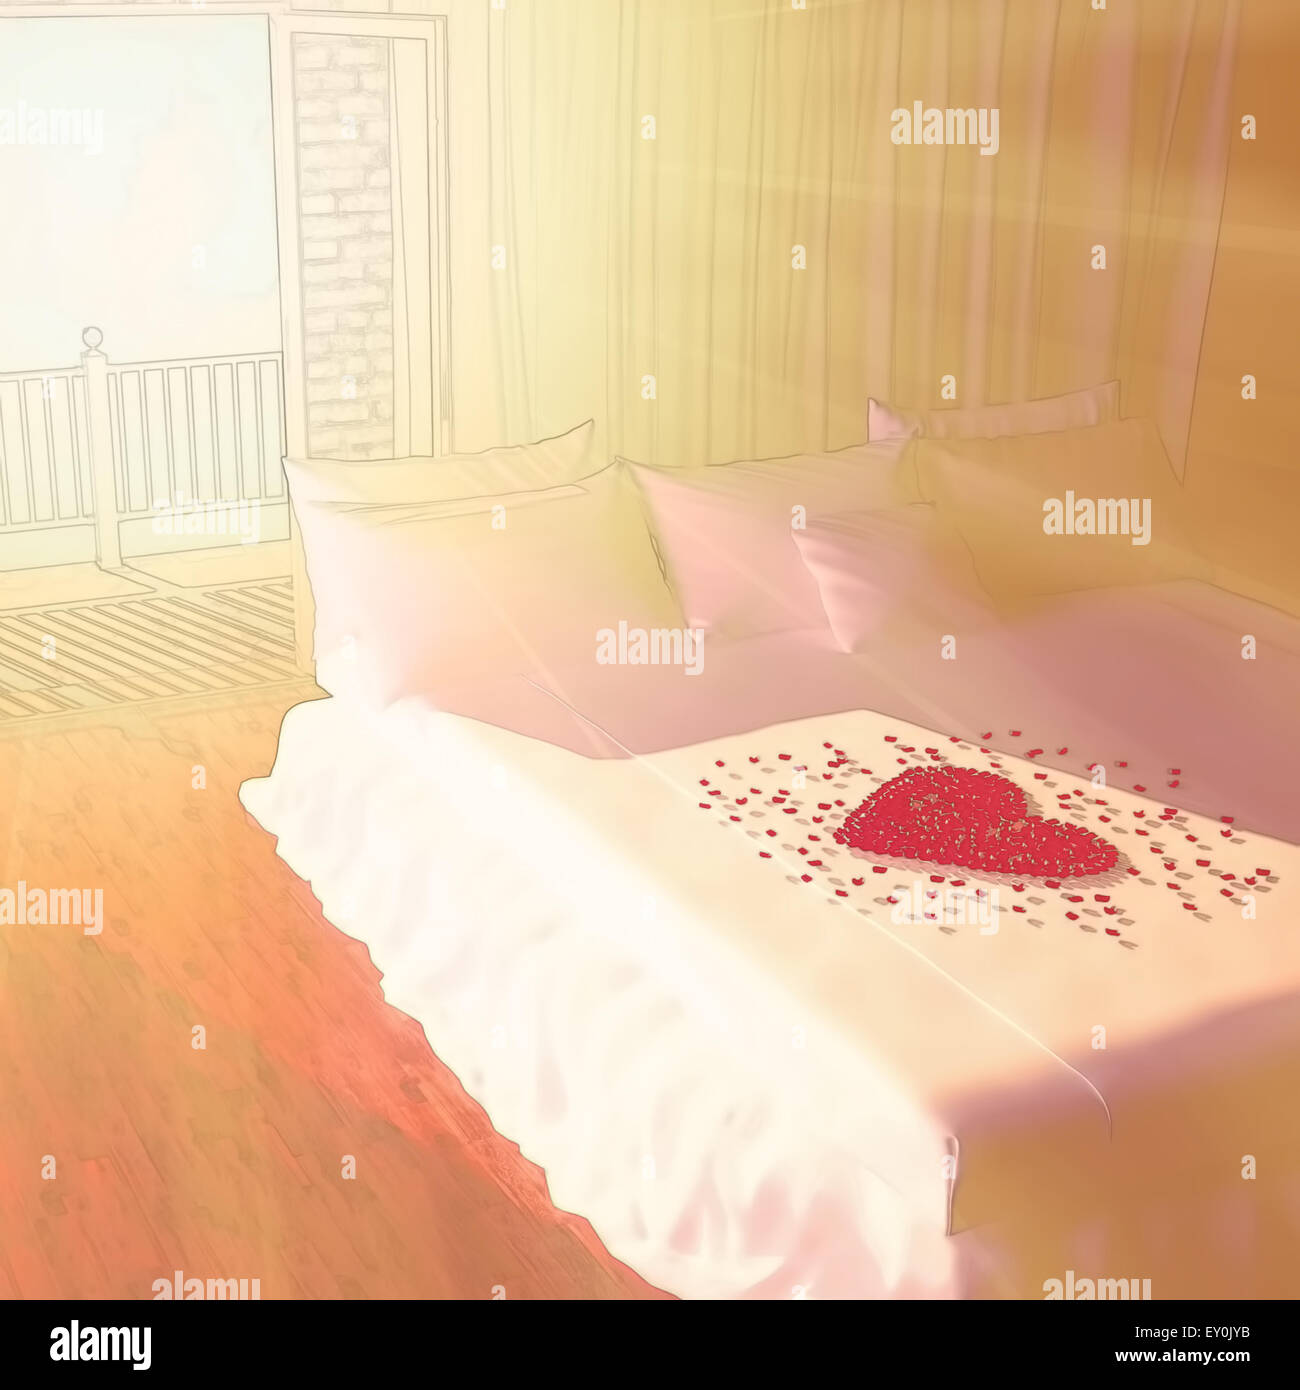 Am Morgen in einem Schlafzimmer. Herz aus Blütenblättern von Rosen auf Bett  Stockfotografie - Alamy